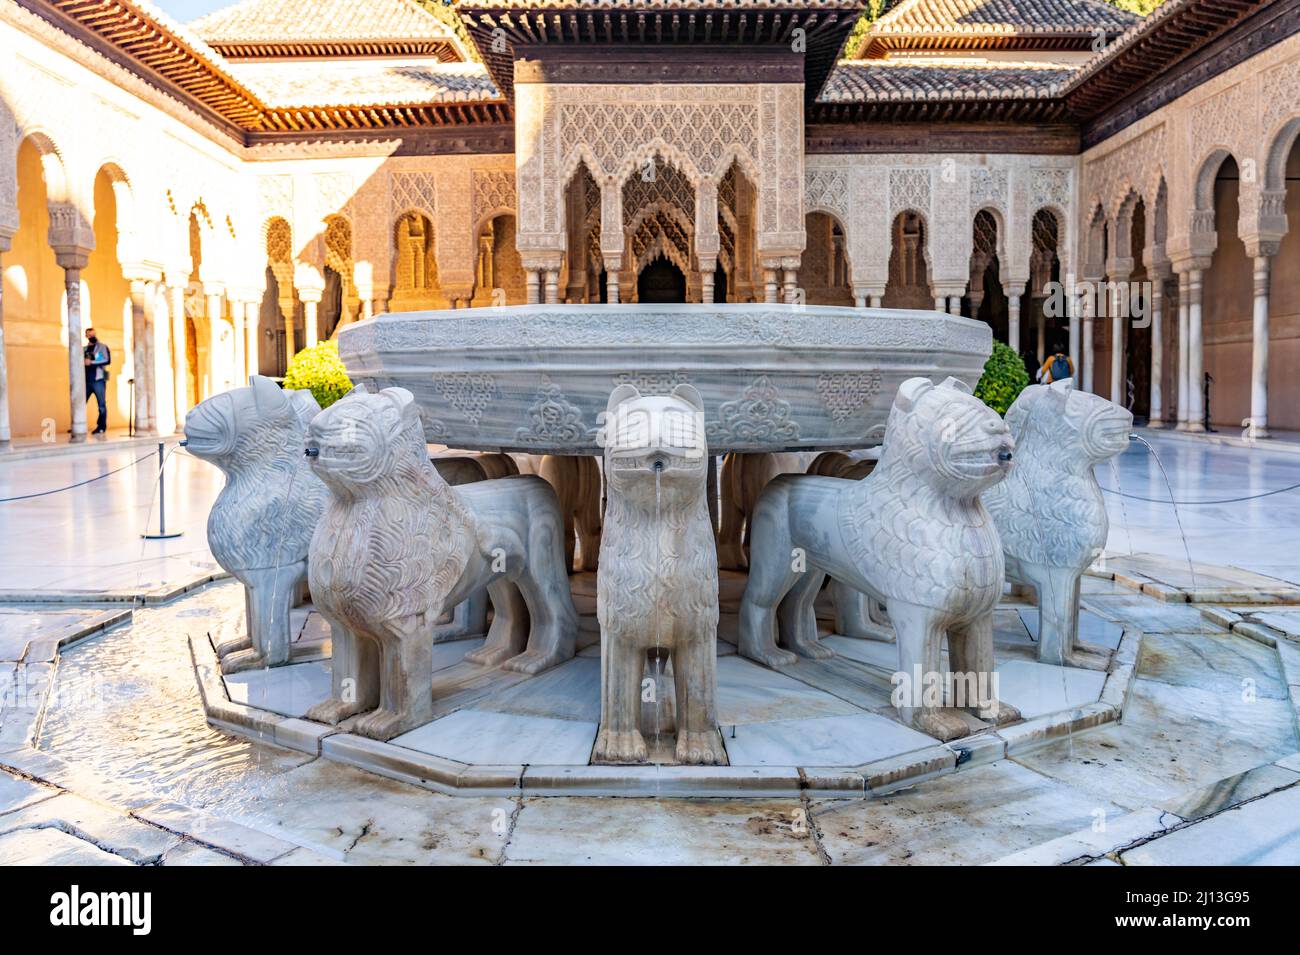 Löwenhof mit dem Löwenbrunnen, Welterbe Alhambra a Granada, Andalusia, spagnolo | Fontana e Corte dei leoni, patrimonio mondiale dell'Alhambra a Grana Foto Stock